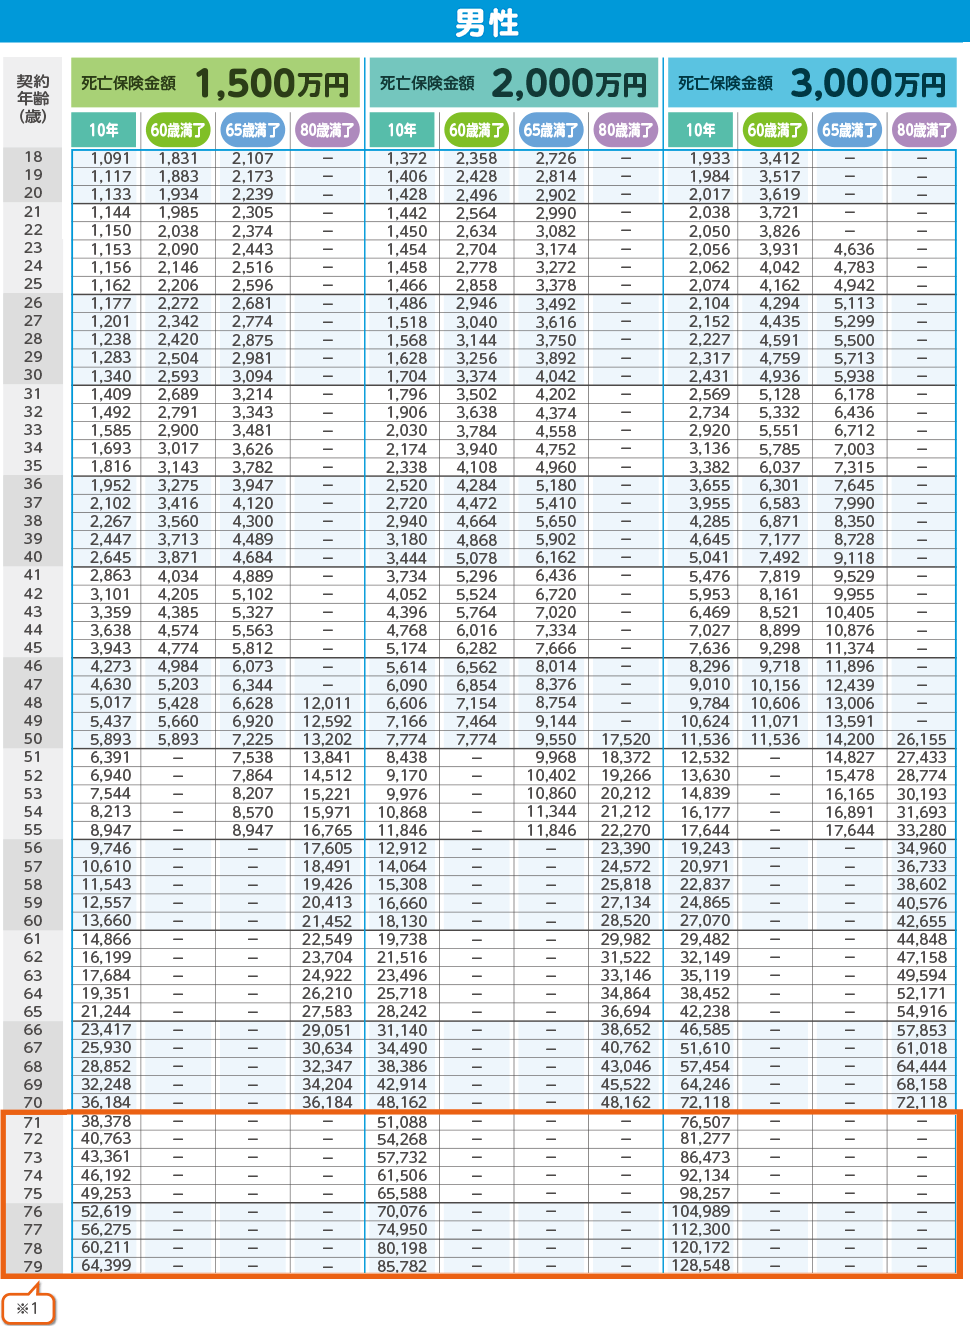 月払保険料表(男性)1,500万円 2,000万円 3,000万円